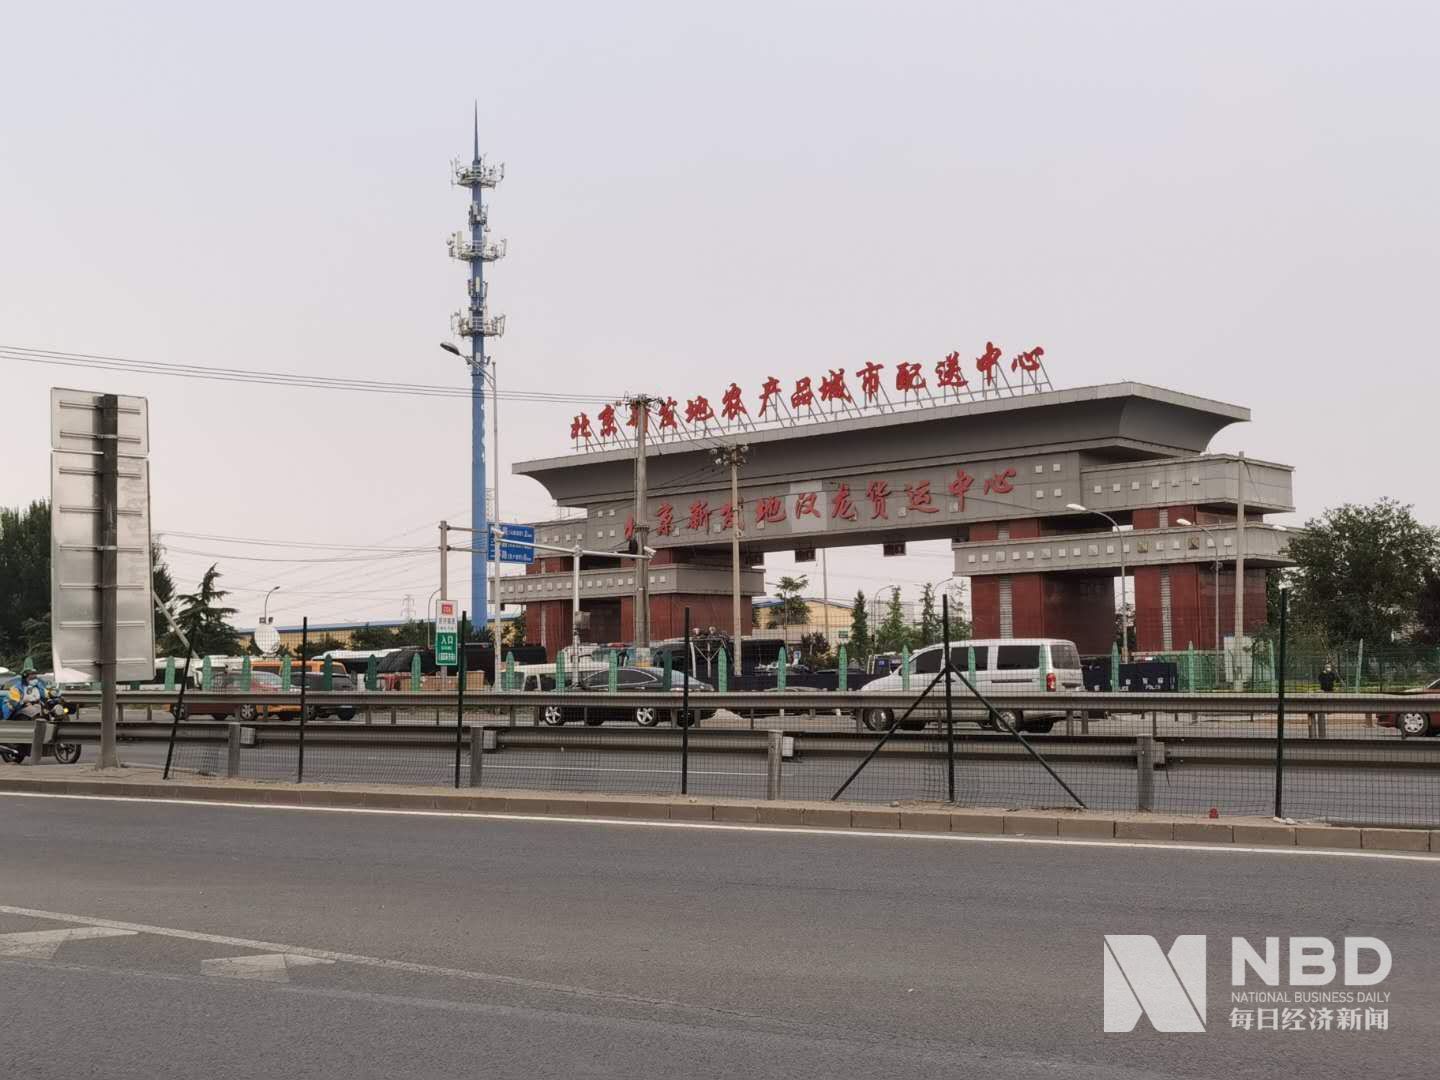 直击北京新发地市场:附近小区已封锁 商户自觉歇业